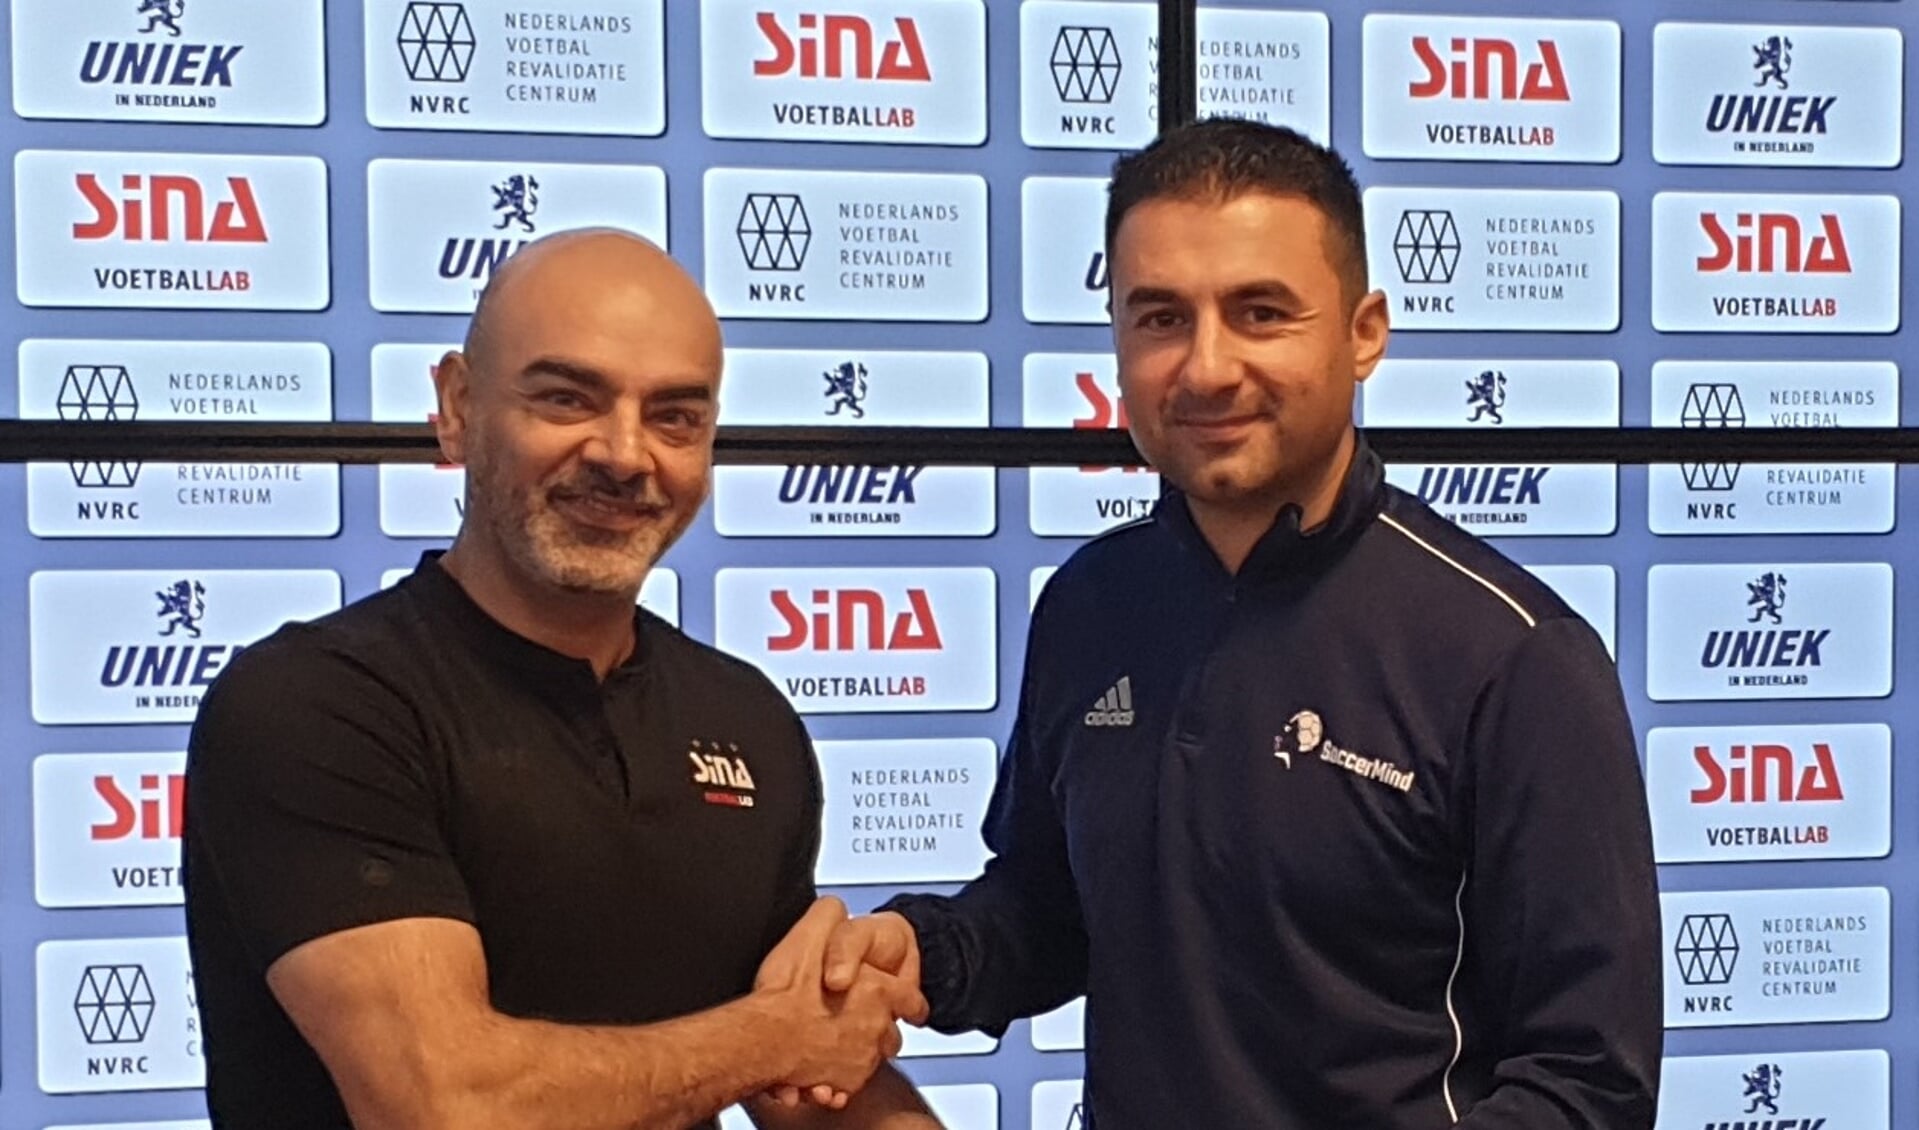 Van links naar rechts:
Siamak Azadi van SINA Voetballab en Cengiz Caglar van SoccerMind. 

